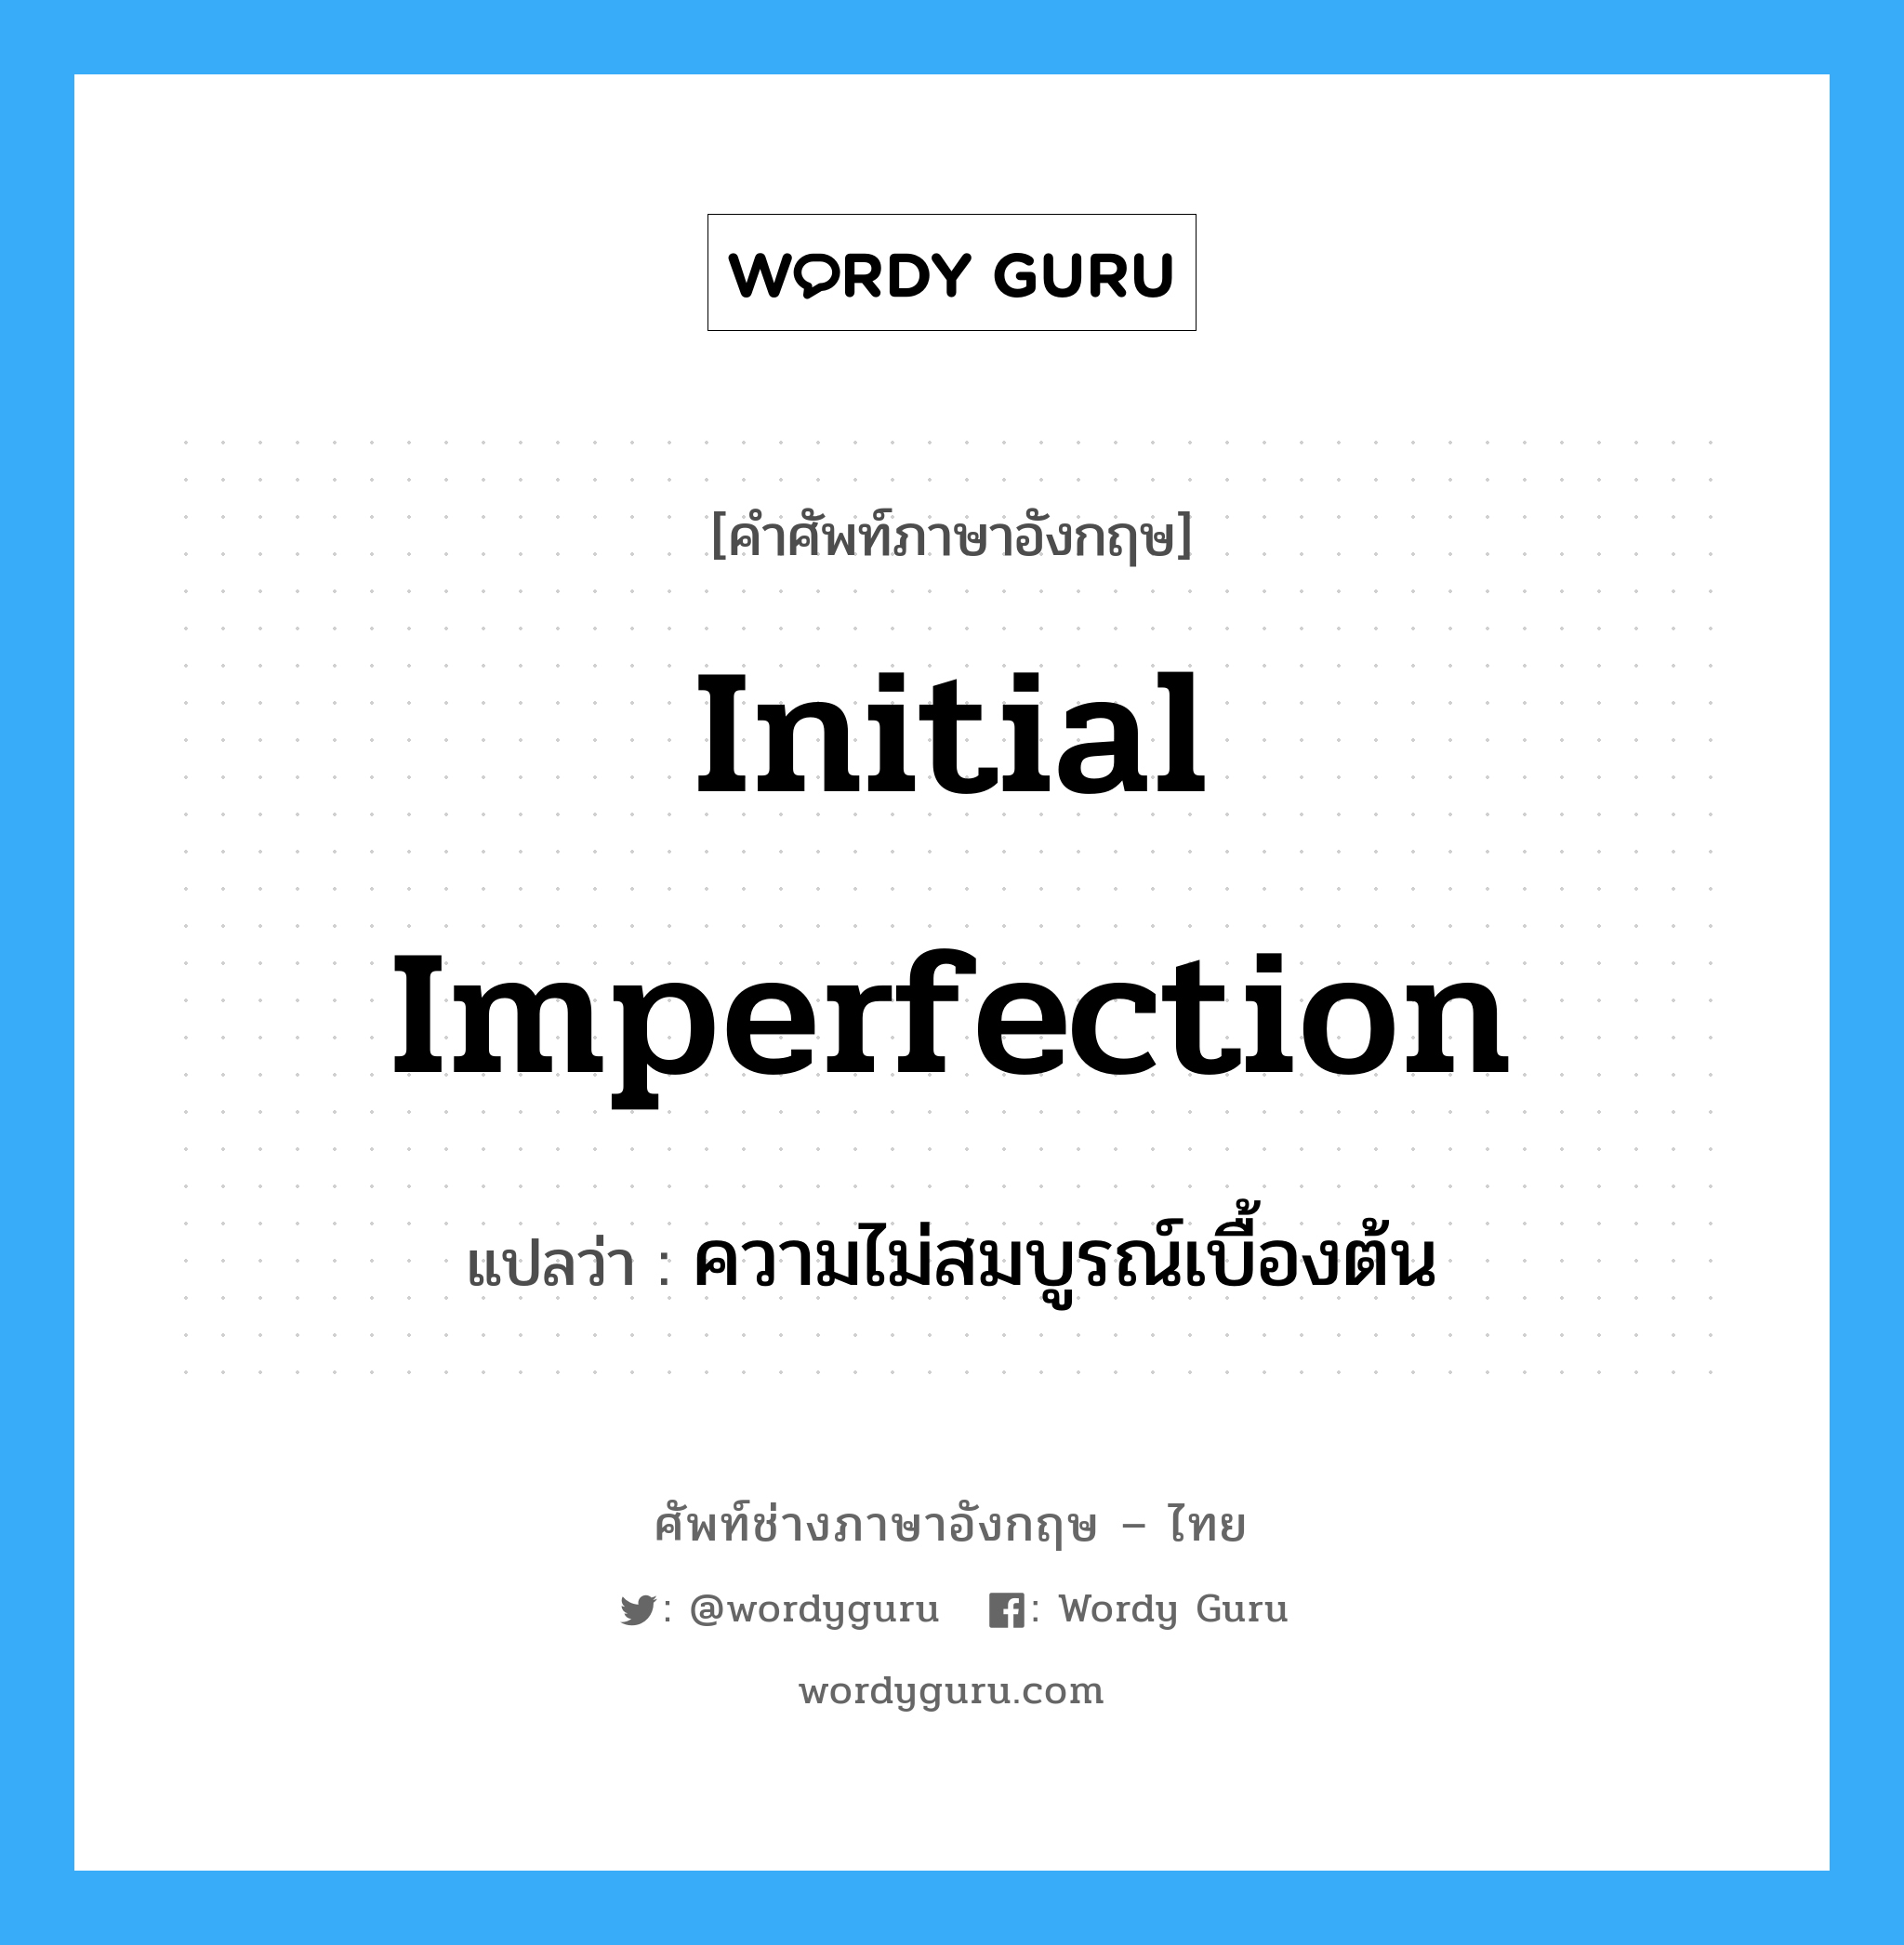 ความไม่สมบูรณ์เบื้องต้น ภาษาอังกฤษ?, คำศัพท์ช่างภาษาอังกฤษ - ไทย ความไม่สมบูรณ์เบื้องต้น คำศัพท์ภาษาอังกฤษ ความไม่สมบูรณ์เบื้องต้น แปลว่า initial imperfection